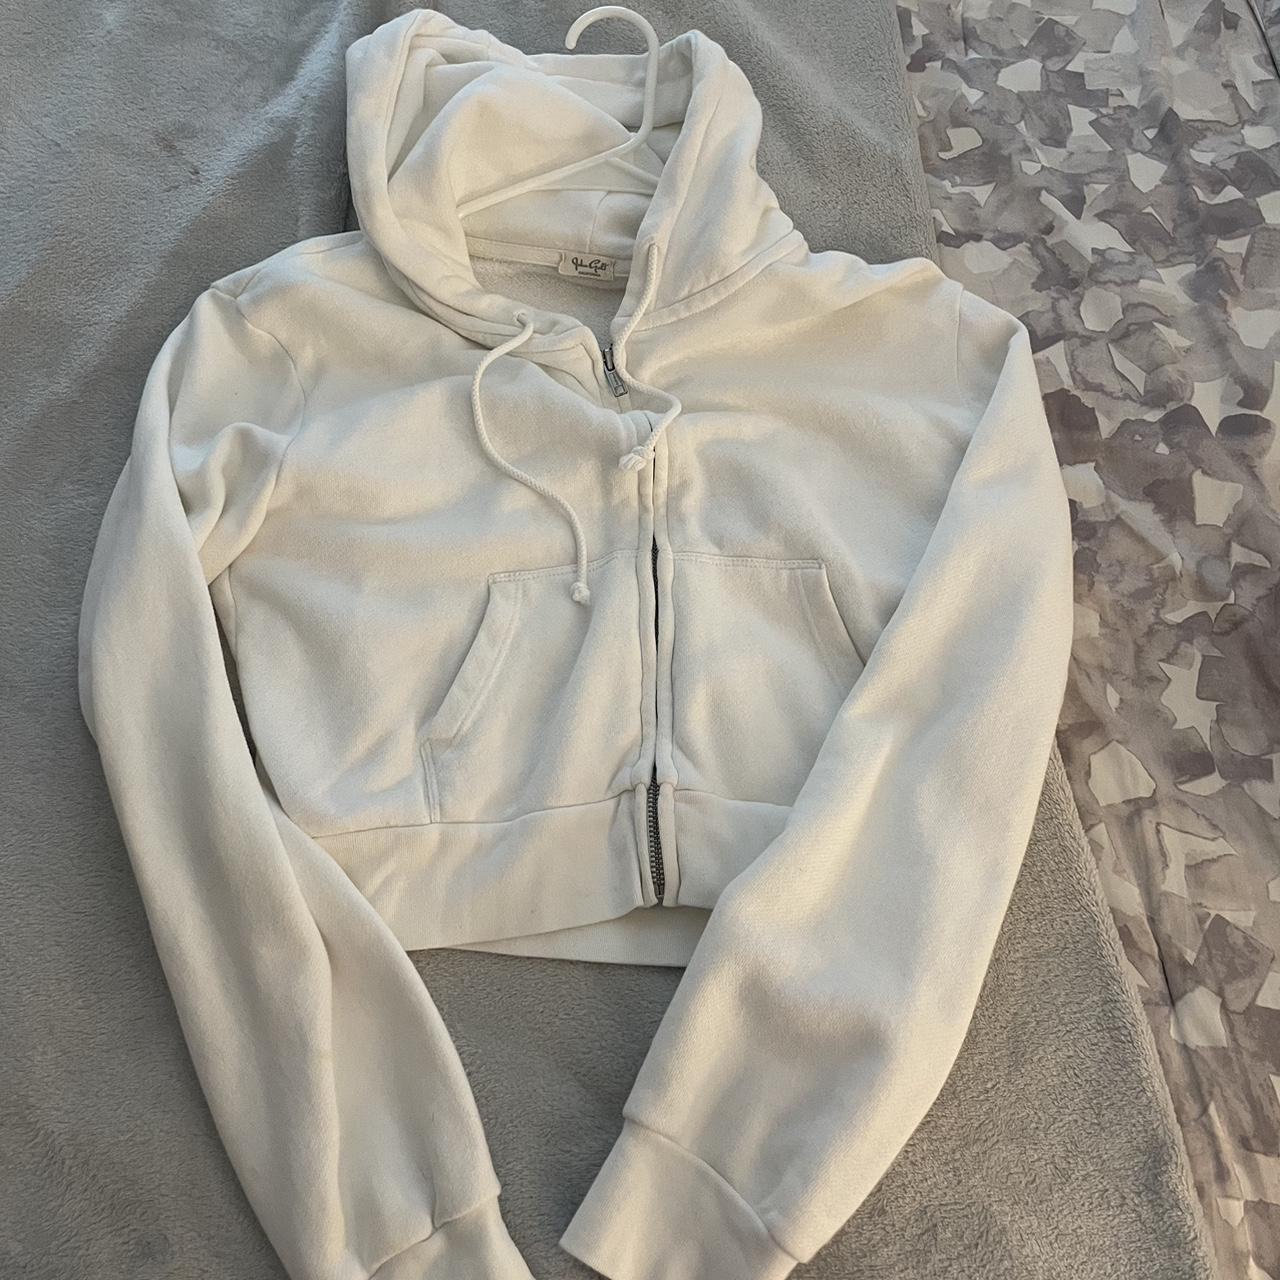 Brandy Melville cropped zip up hoodie. Has a stain - Depop